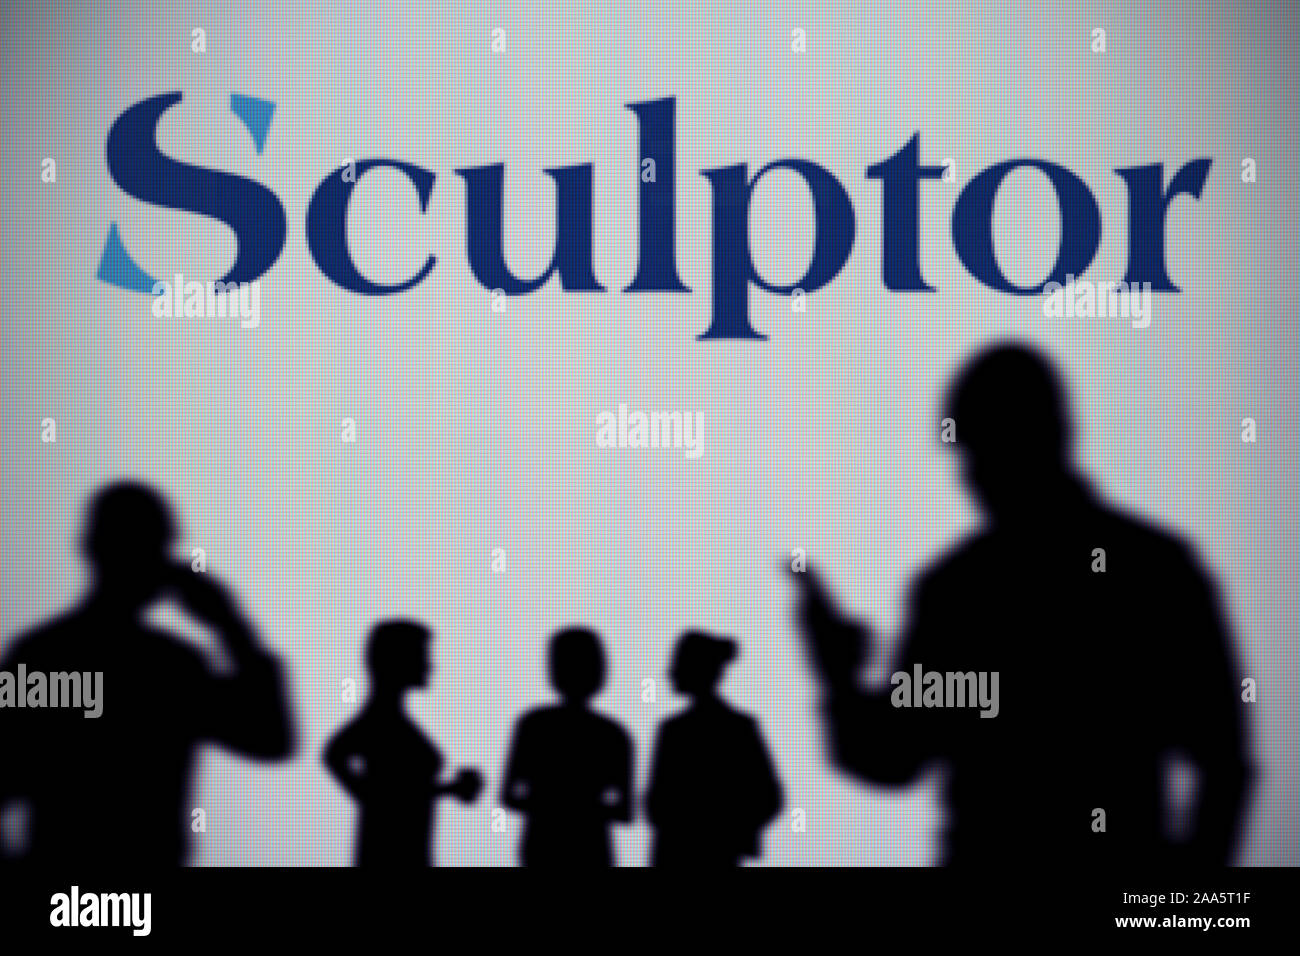 El escultor Capital Management logotipo es visto en una pantalla LED en el fondo mientras una silueta persona utiliza un smartphone (uso Editorial solamente) Foto de stock